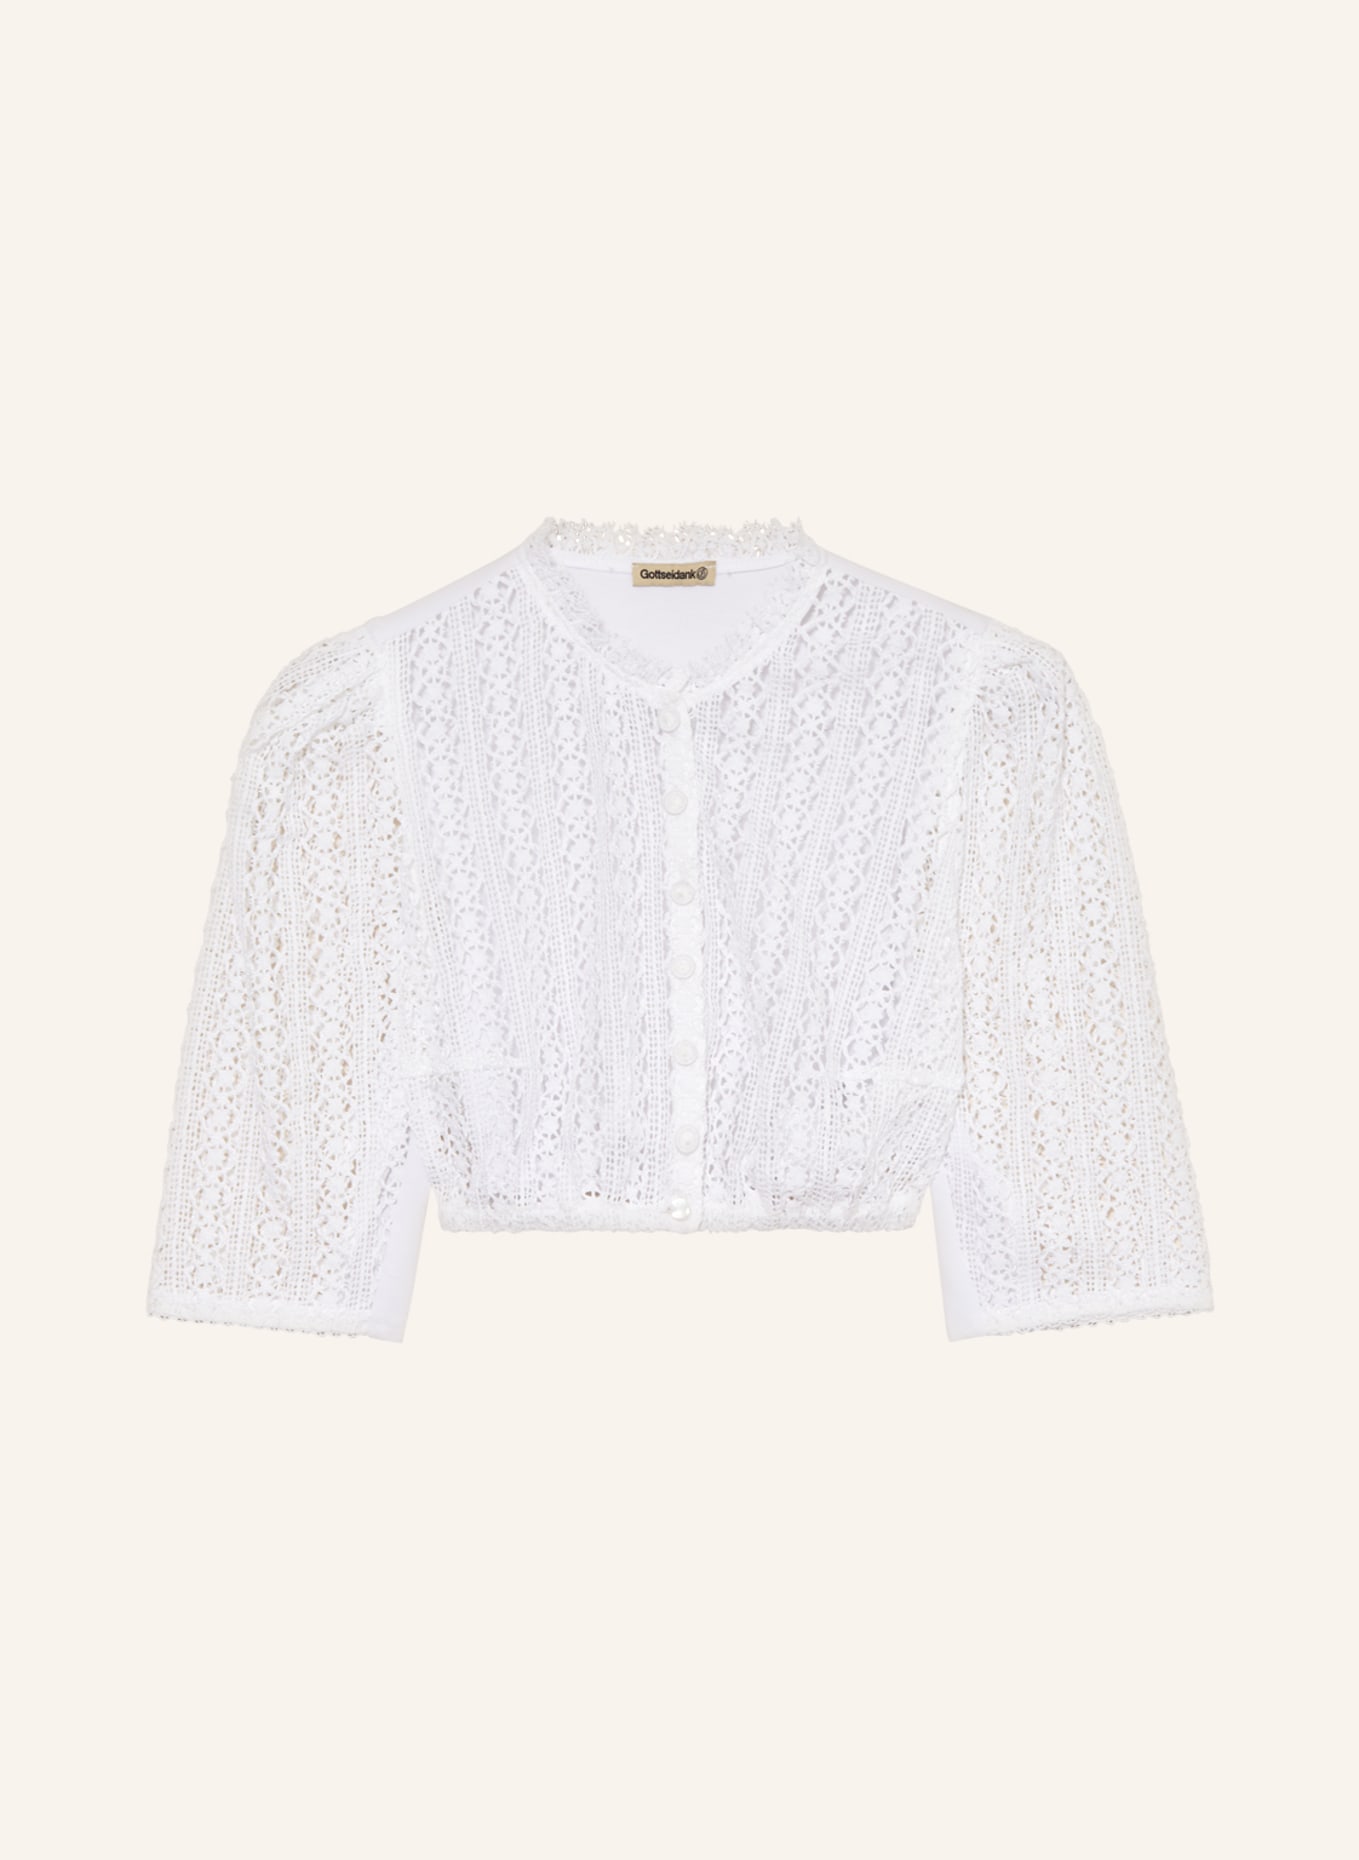 Gottseidank Dirndl blouse ANGÉLIQUE made of lace, Color: WHITE (Image 1)